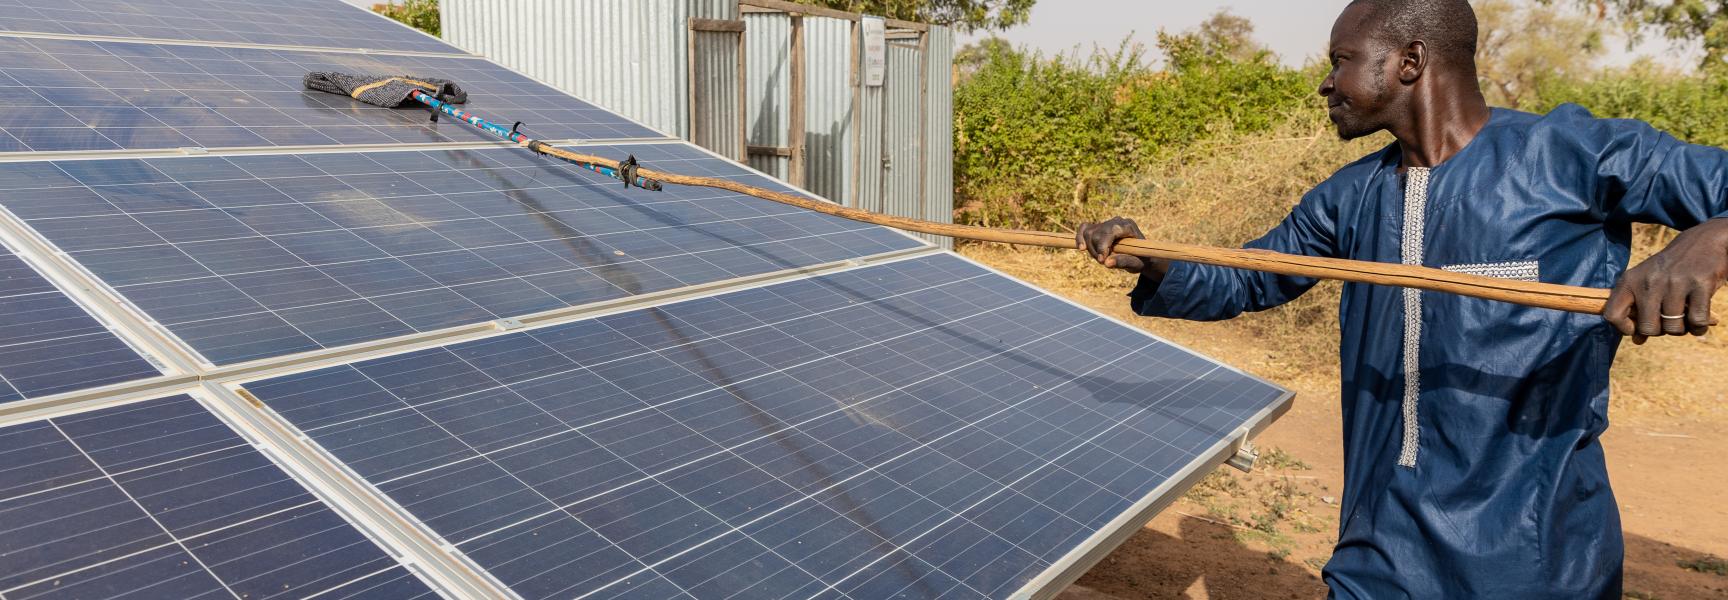 Un homme nettoyant un panneau solaire au Mali